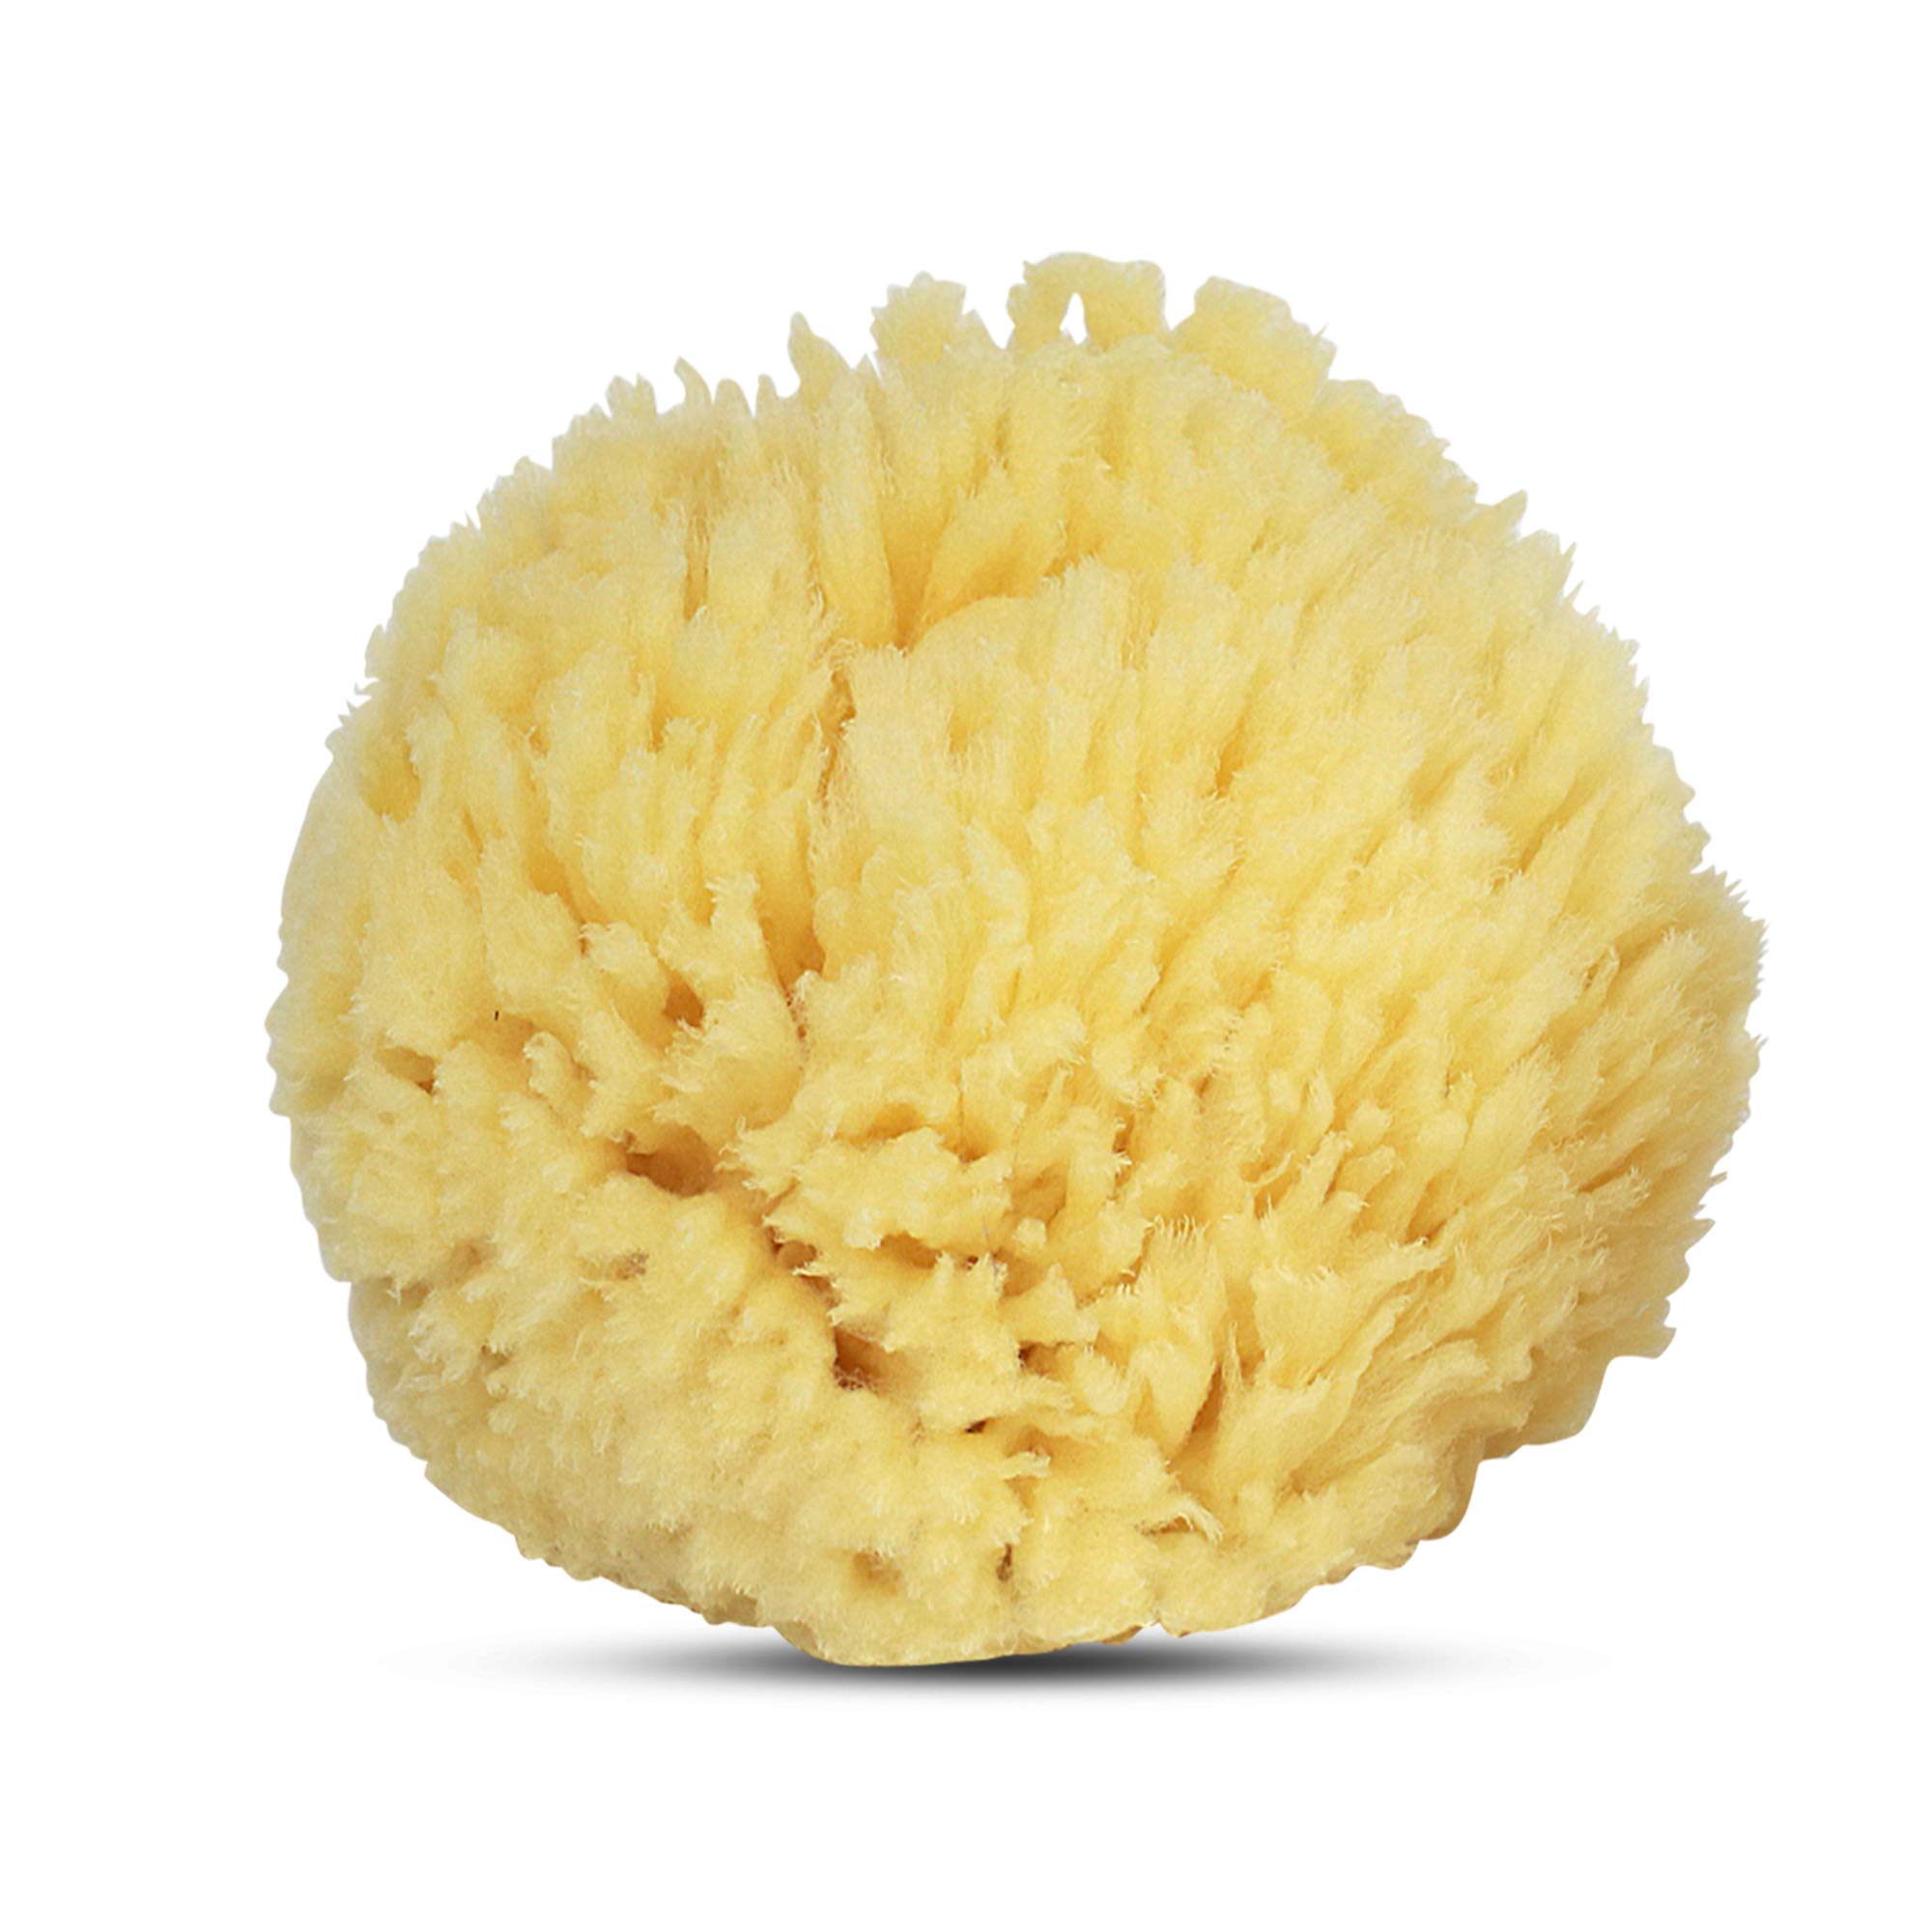 Baby Buddy Natural Wool Sea Sponge, Baby Bath Sponge, Soft on Tender Skin, Hypoallergenic, Brown, 4.5in, 1 Count